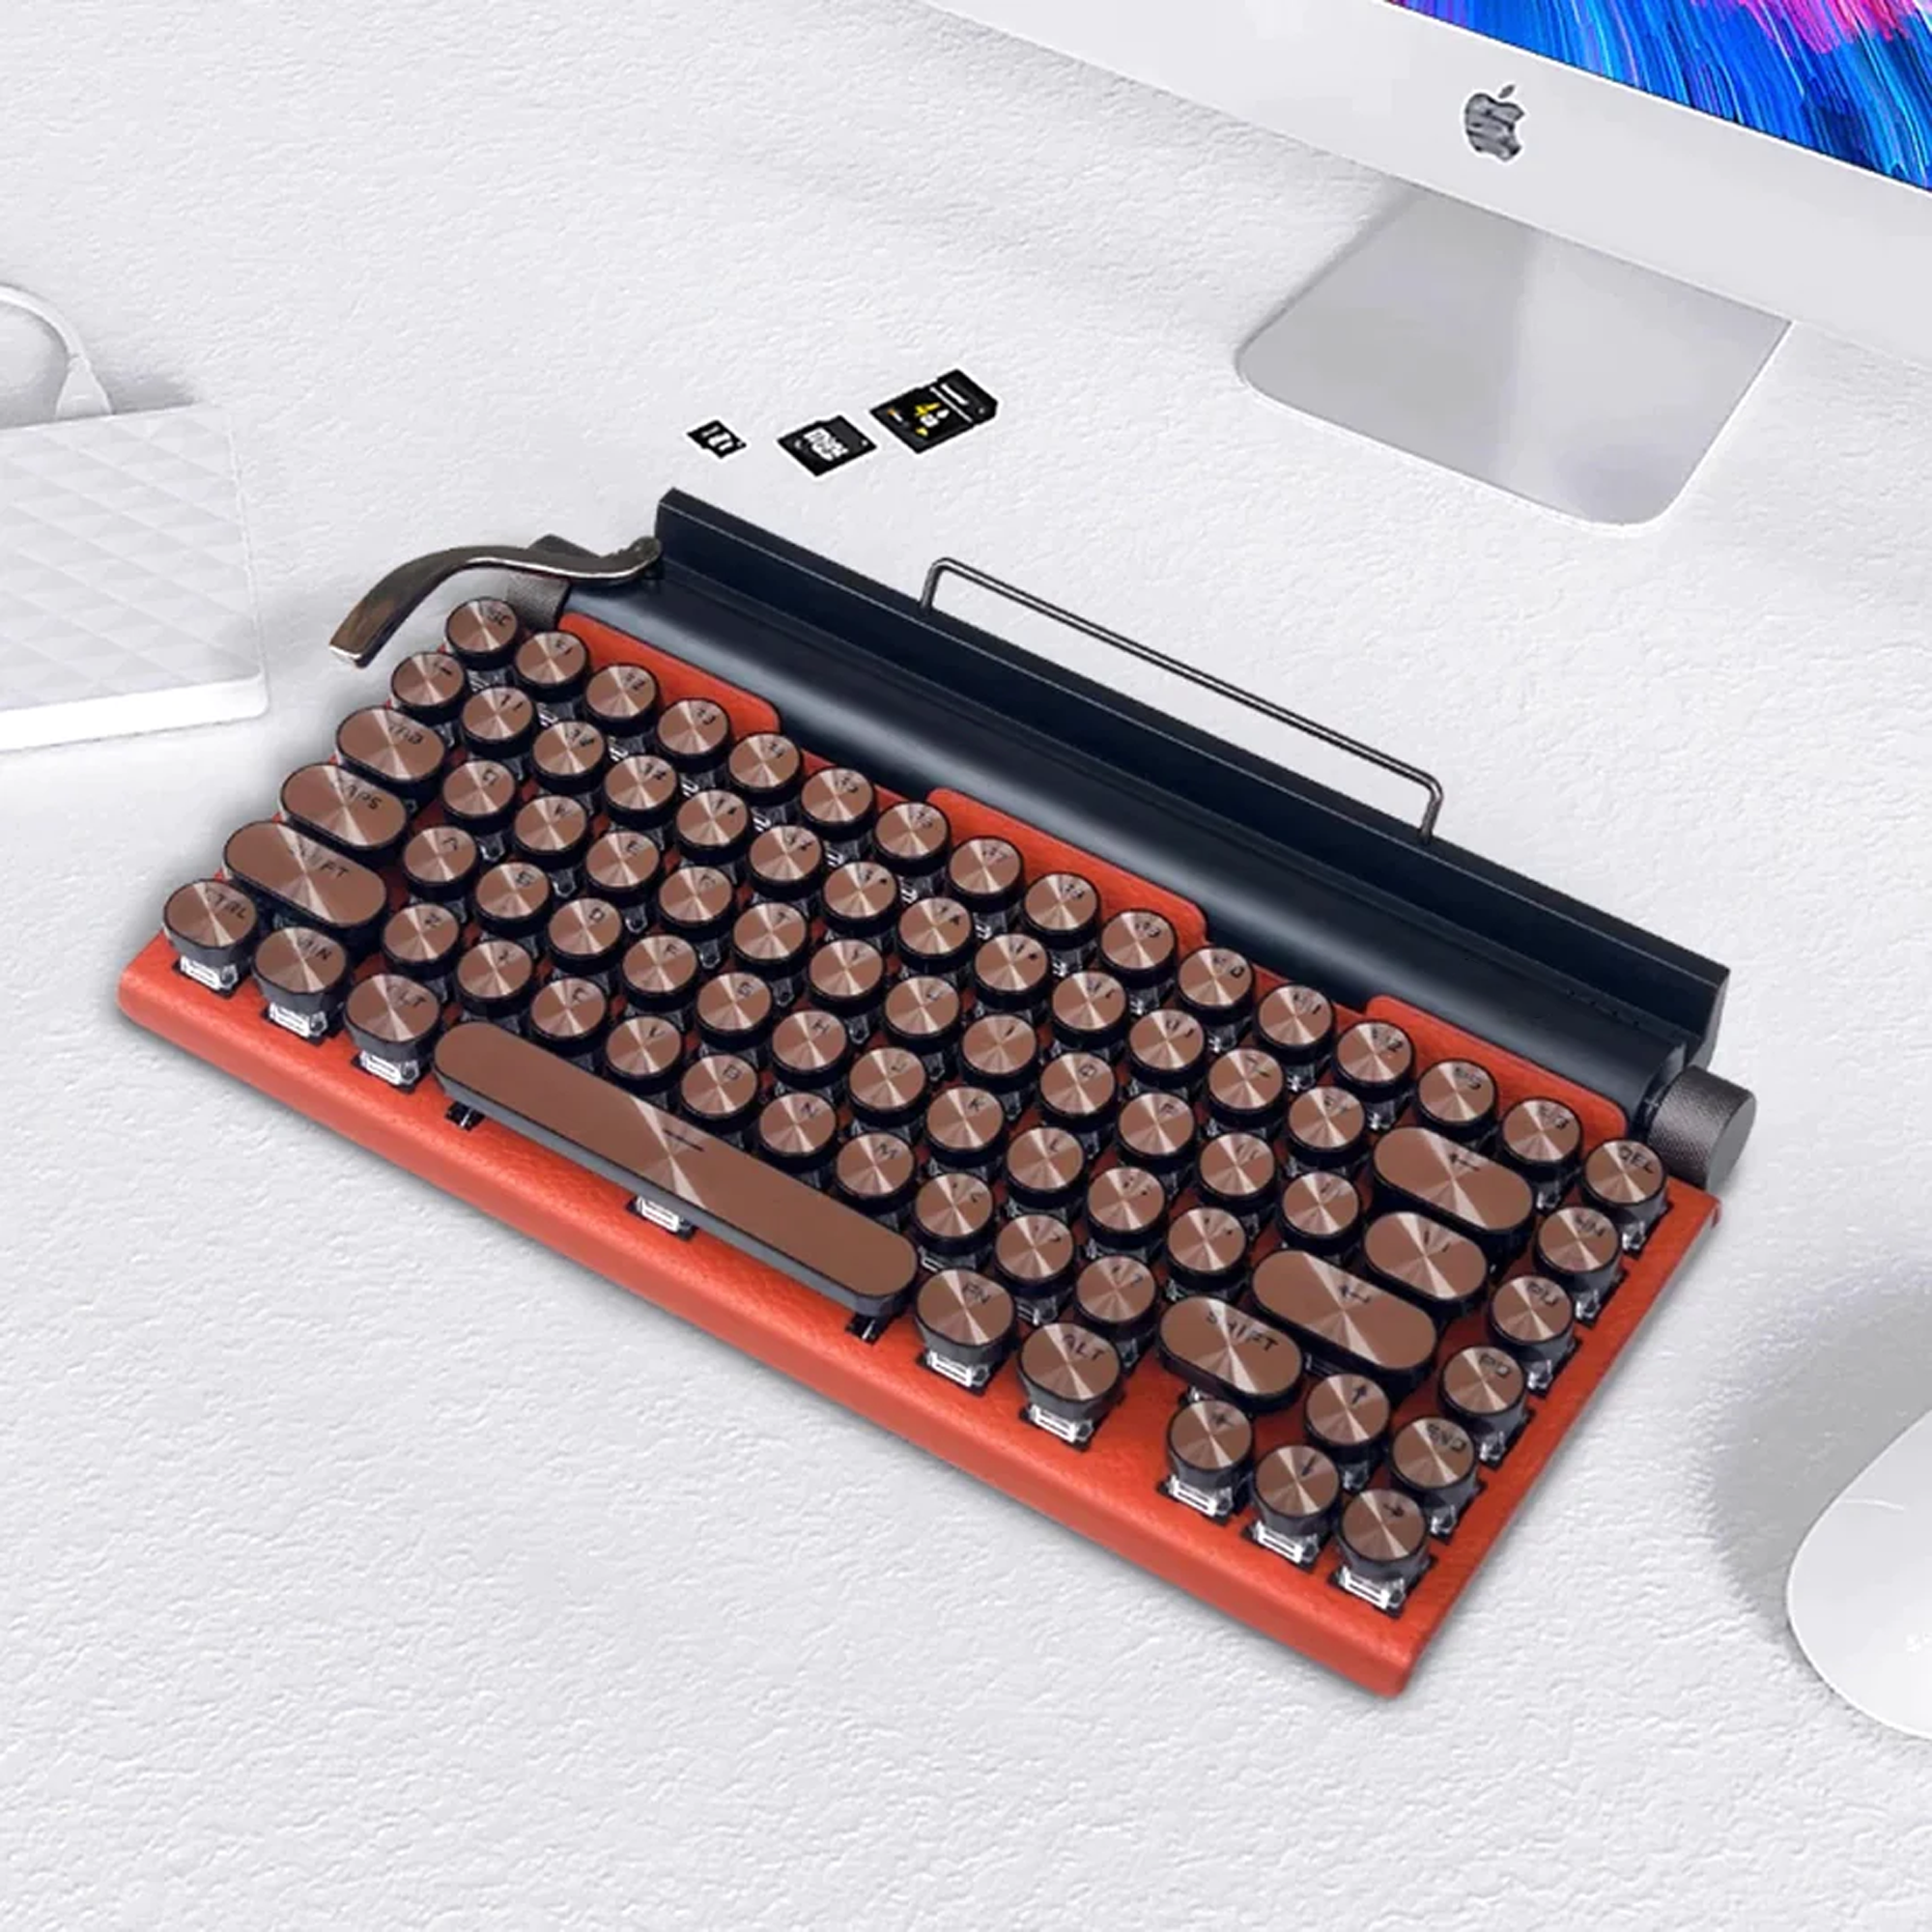 Retro Typewriter Keyboard Gifts for Virgo